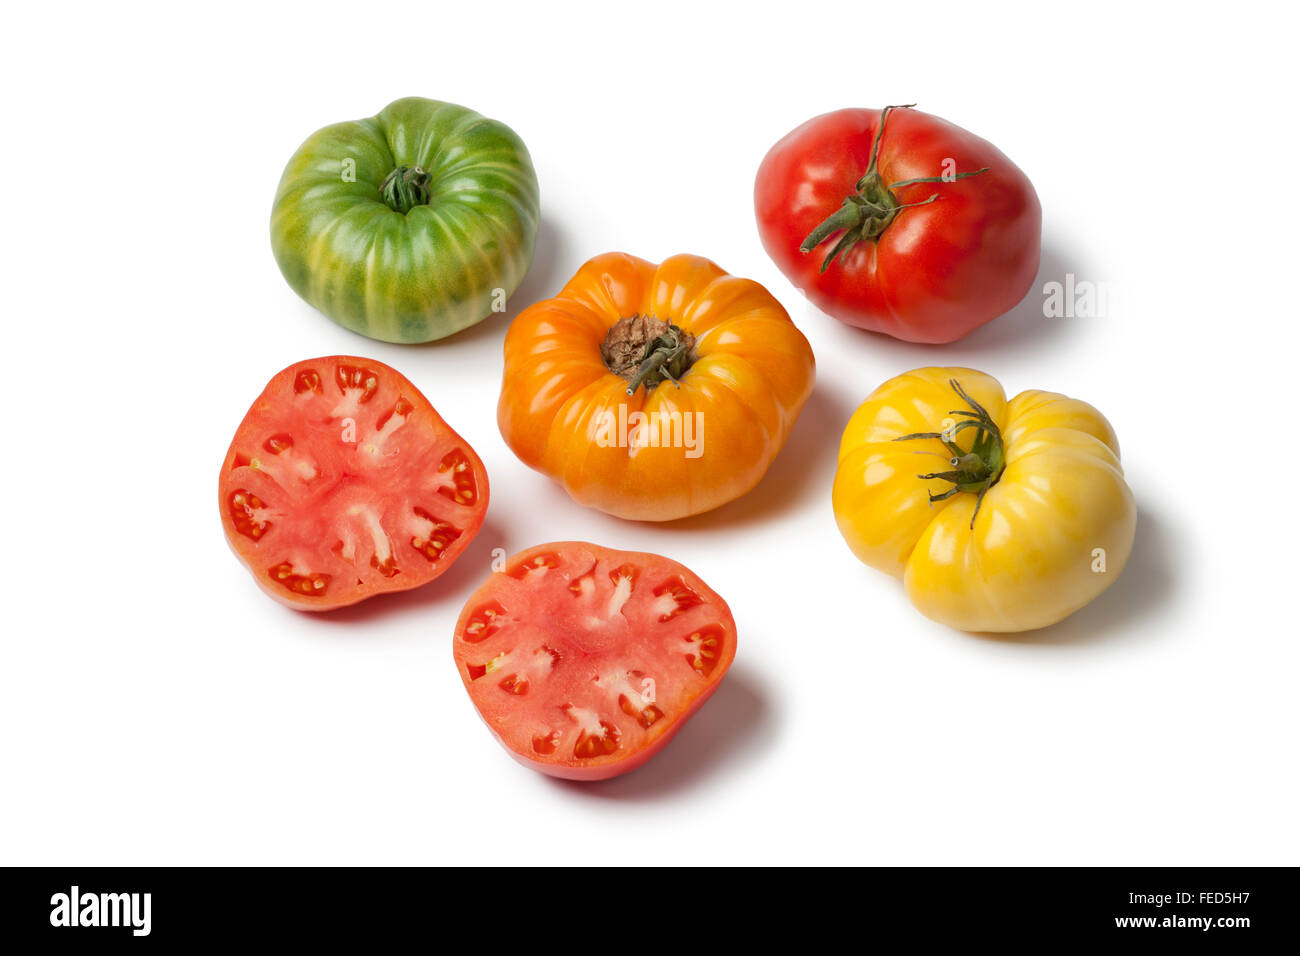 Diversité des tomates Beefsteak sur fond blanc Banque D'Images